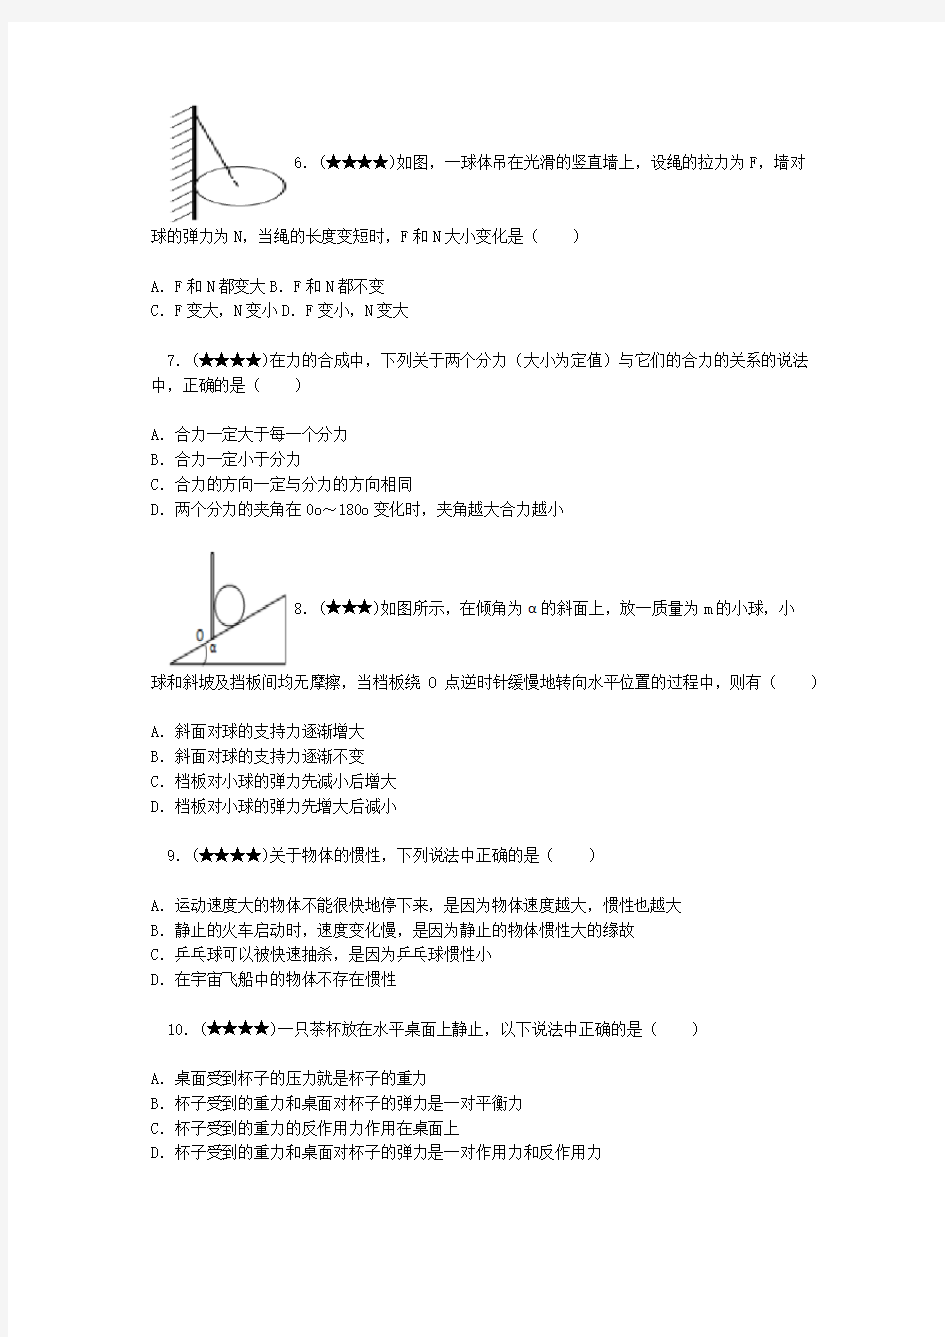 2013-2014学年上海市金山中学高一(上)段考物理试卷(12月份)